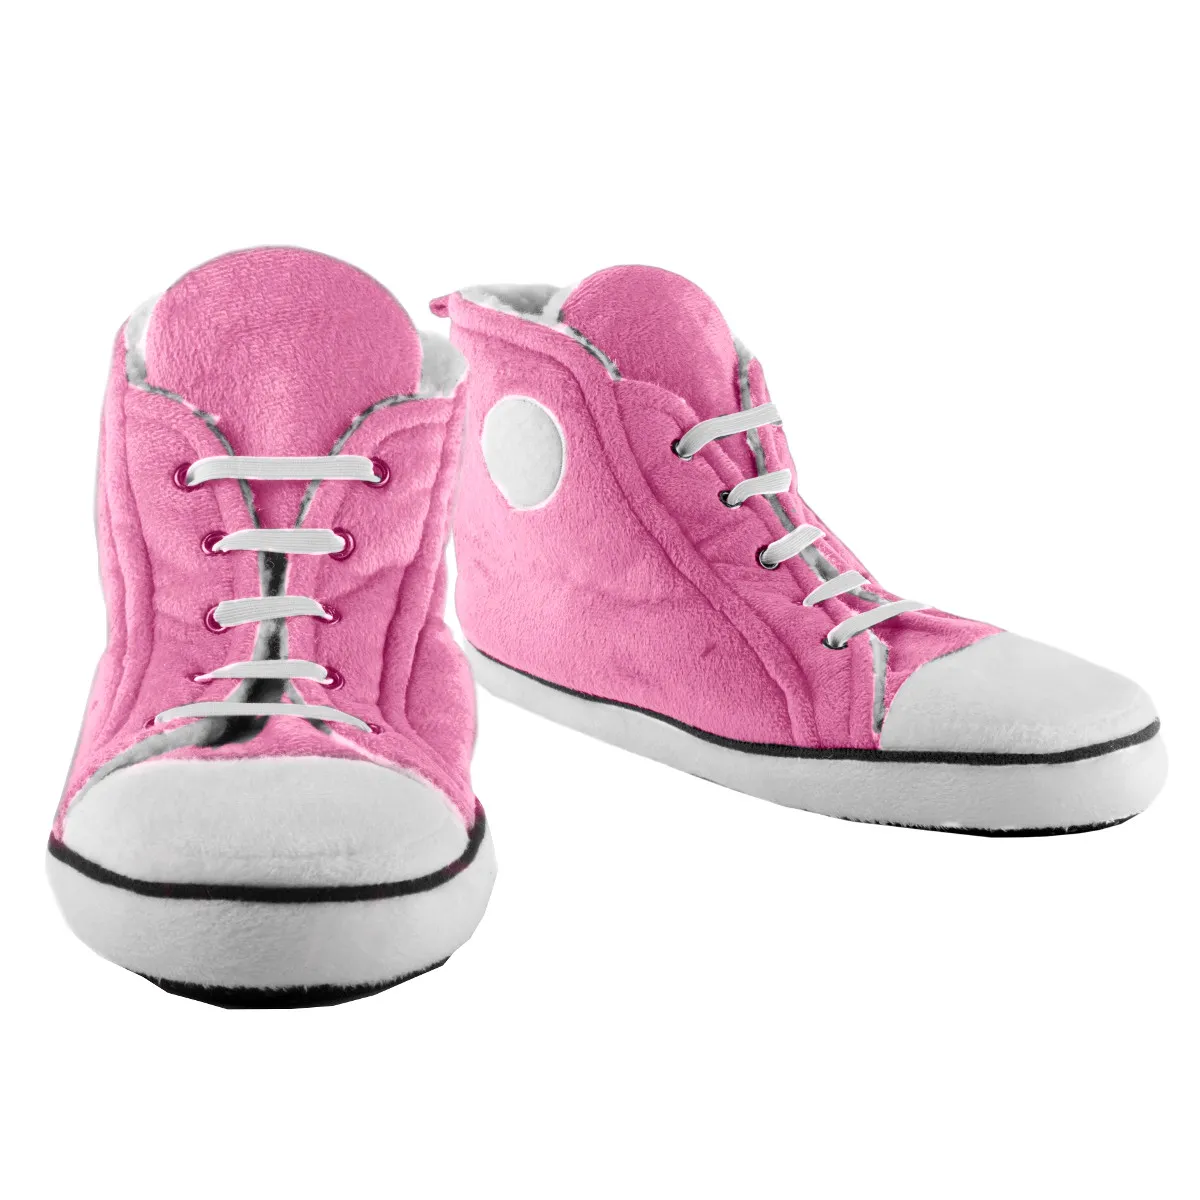 Plüsch Hausschuhe im Sneaker Look für Kids Pink groß